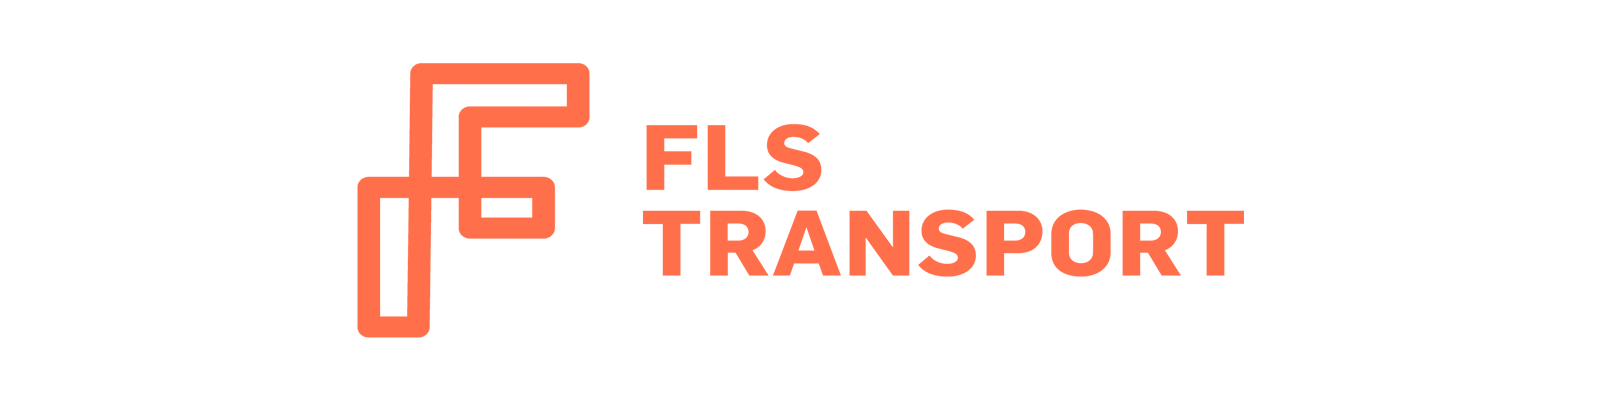 FLS-Transportation-Logo